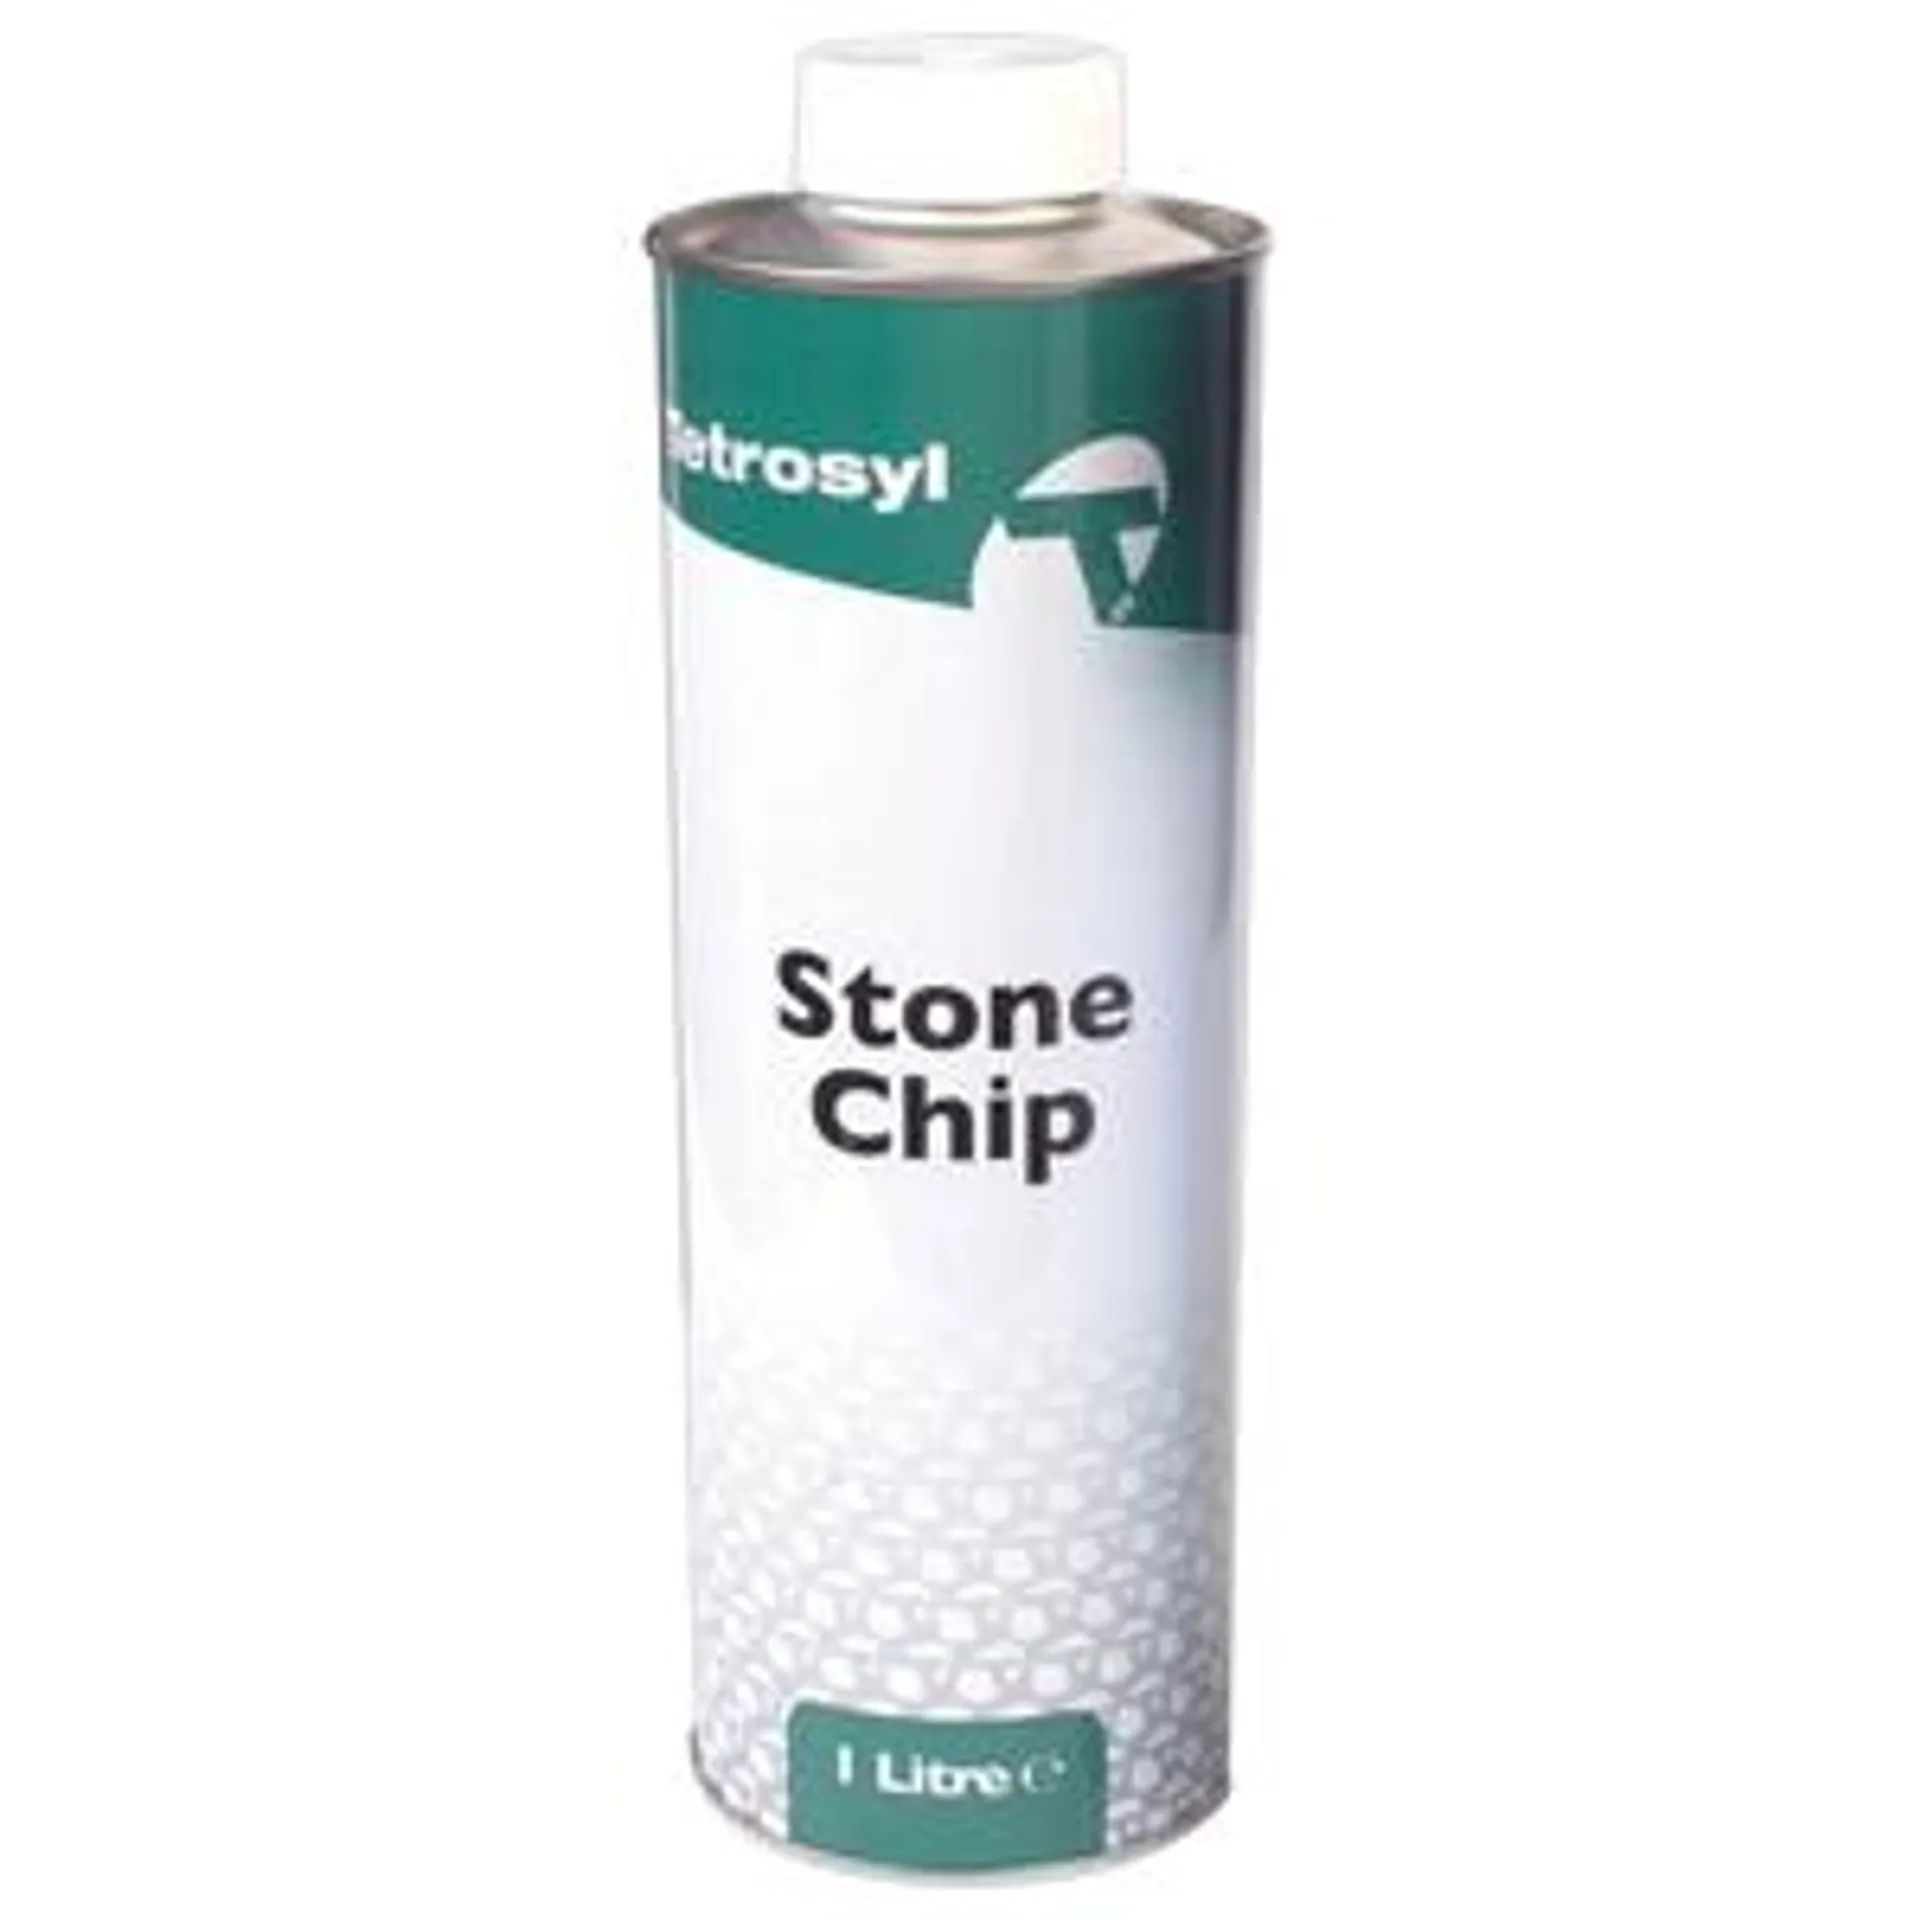 tetrosyl tetrosyl stone chip white 1l